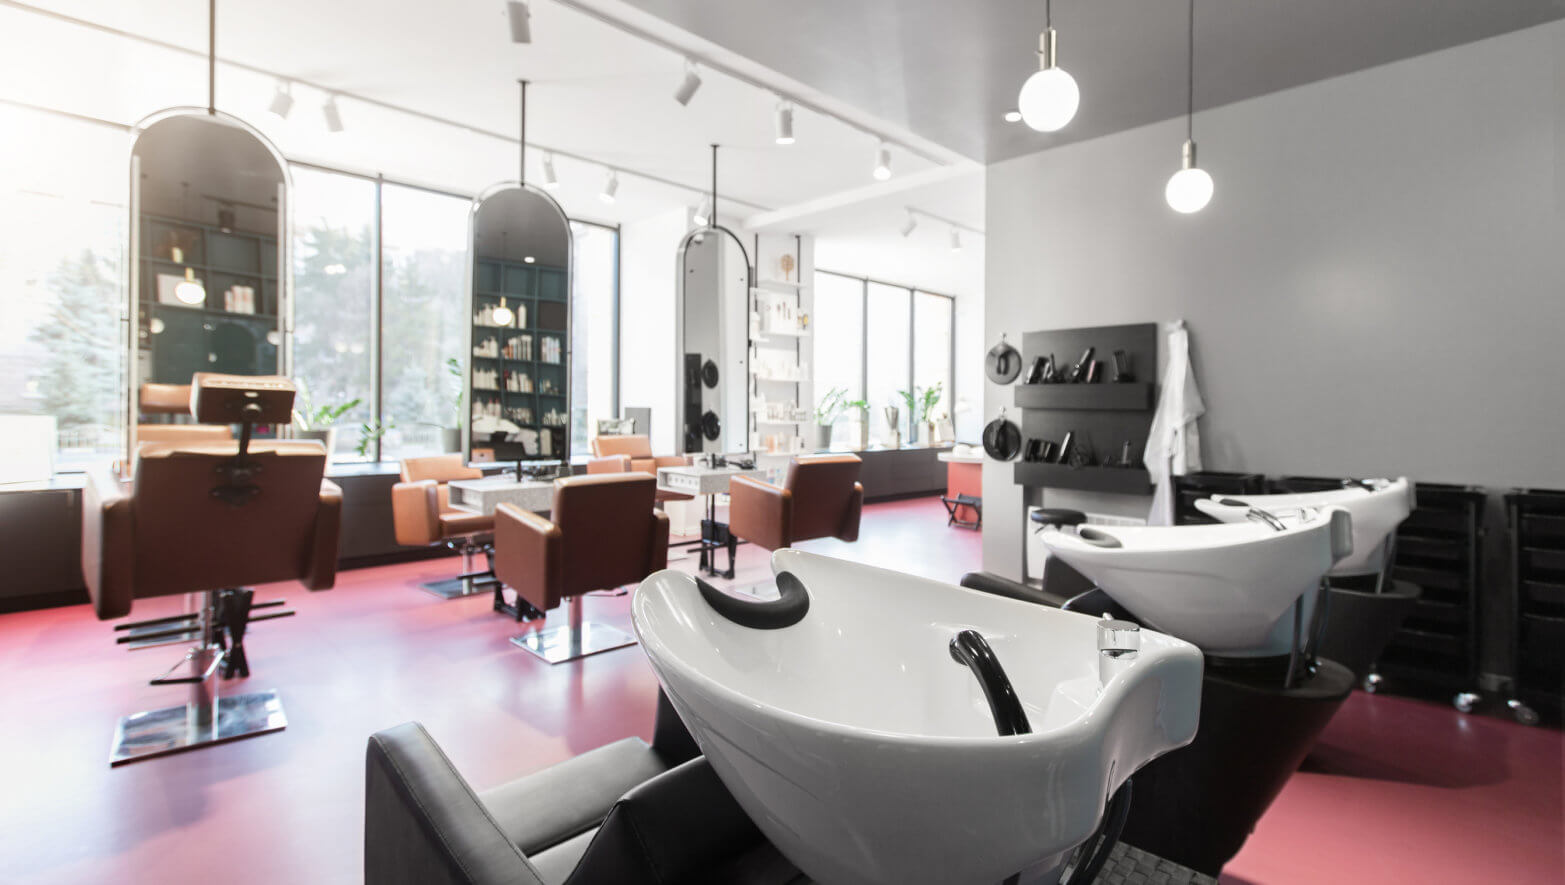 Salon Hairwash stations